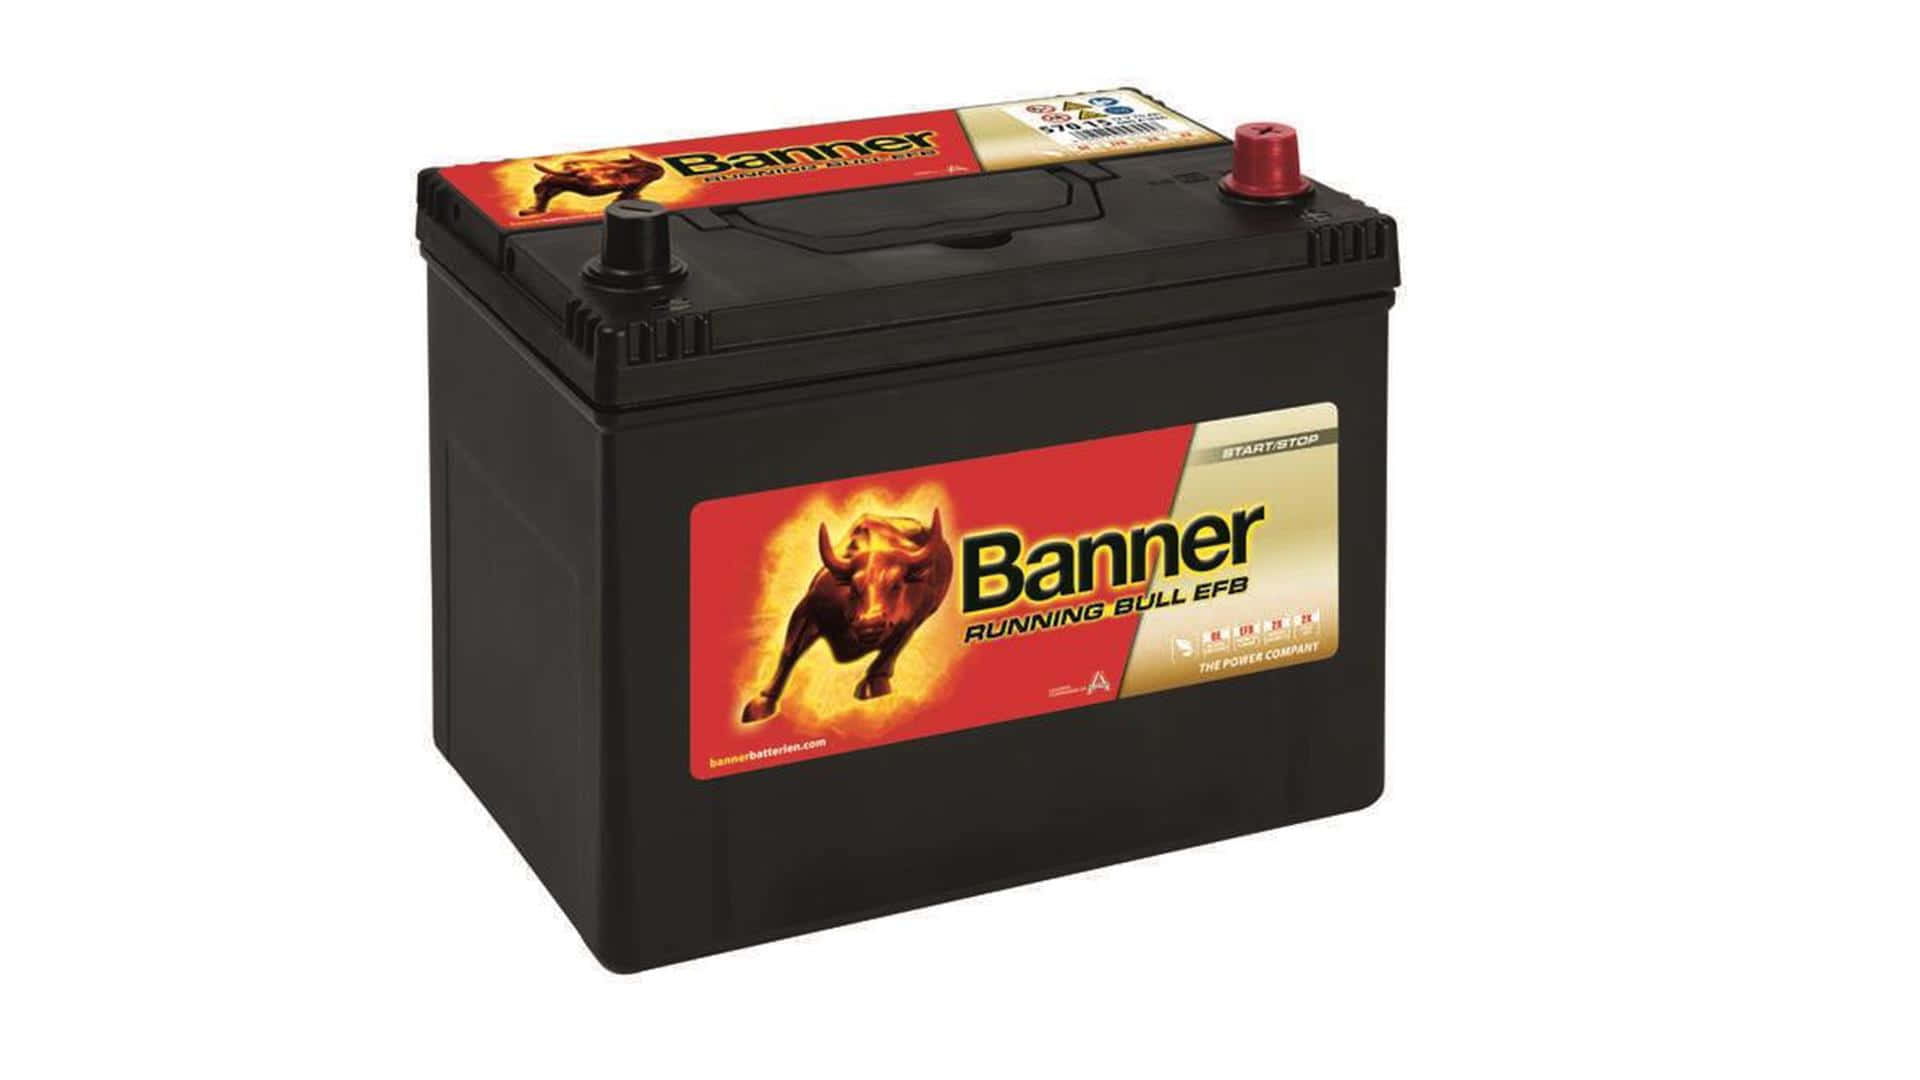 Banner Running Bull EFB 57015 Autobatterie